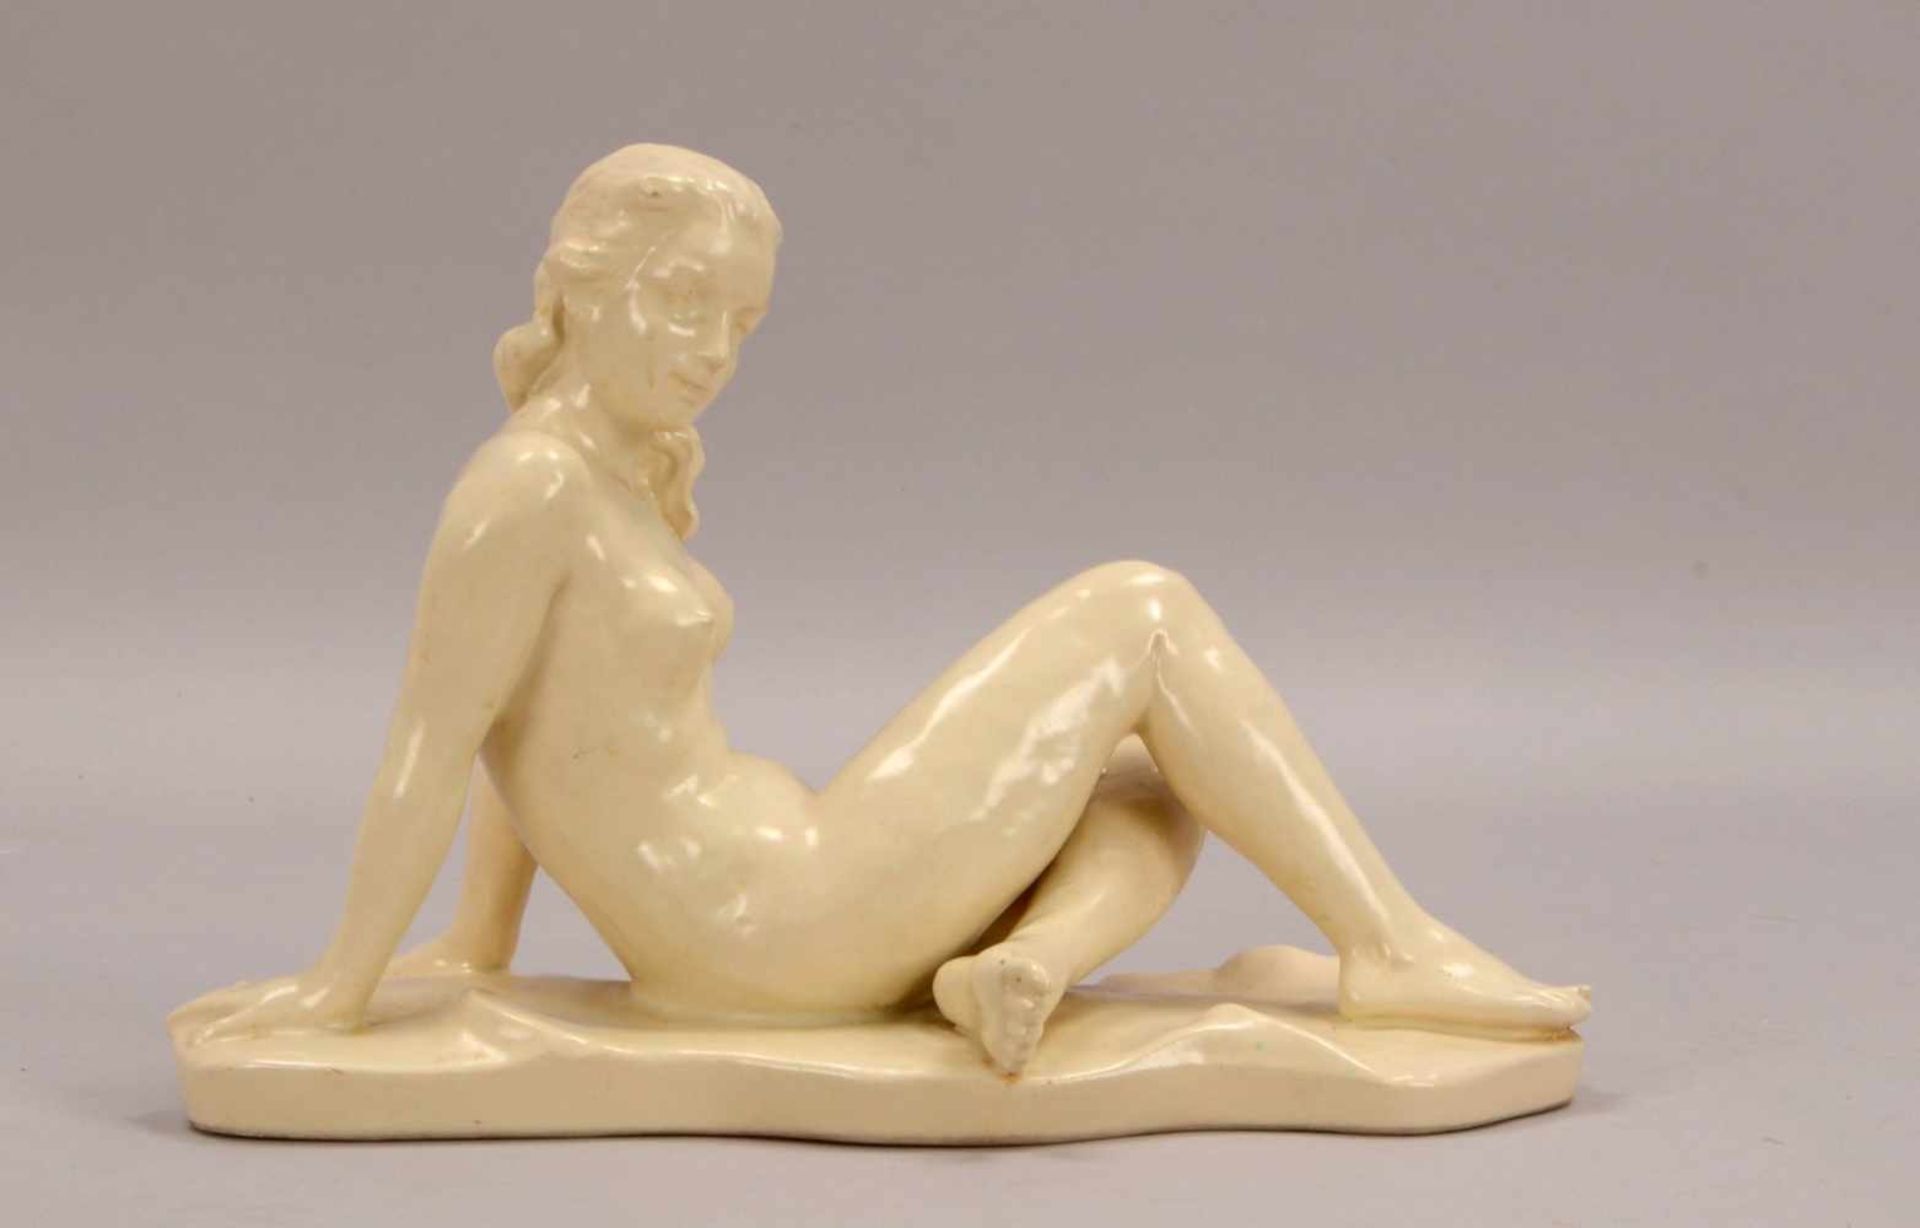 Keramikskulptur, 'Sitzender Frauenakt', nummeriert '815', ungemarkt; Höhe 19 cm, Länge 28 cm